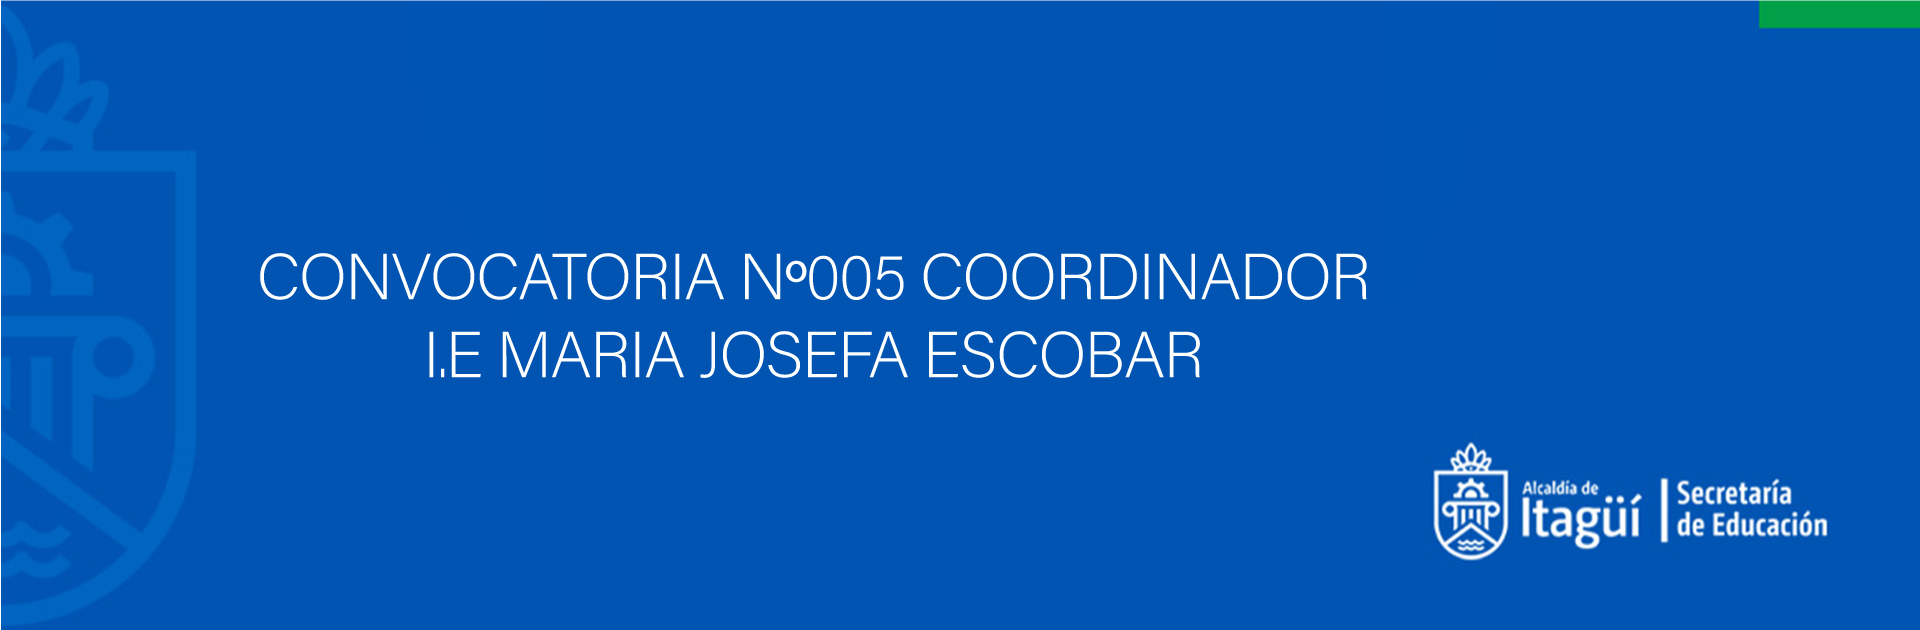 CONVOCATORIA N 005 COORDINADOR I.E MARIA JOSEFA ESCOBAR